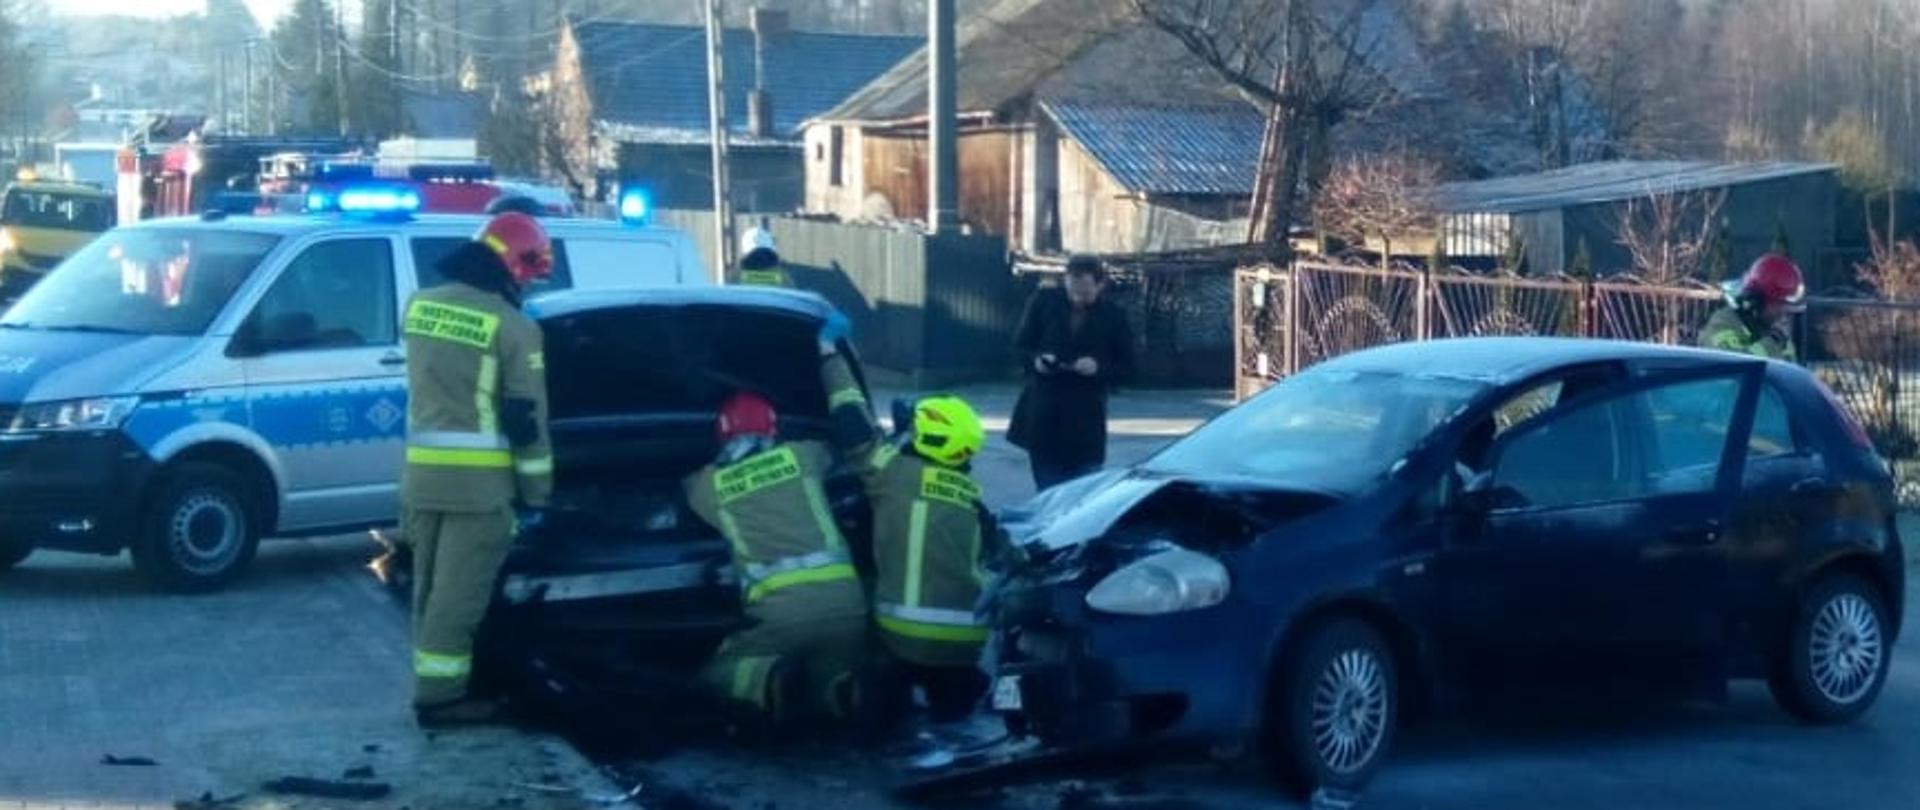 Zdjęcie przedstawia dwa samochody osobowe, które uległy zderzeniu, przy których pracuje trzech strażaków. W tle wiać radiowóz policyjny.